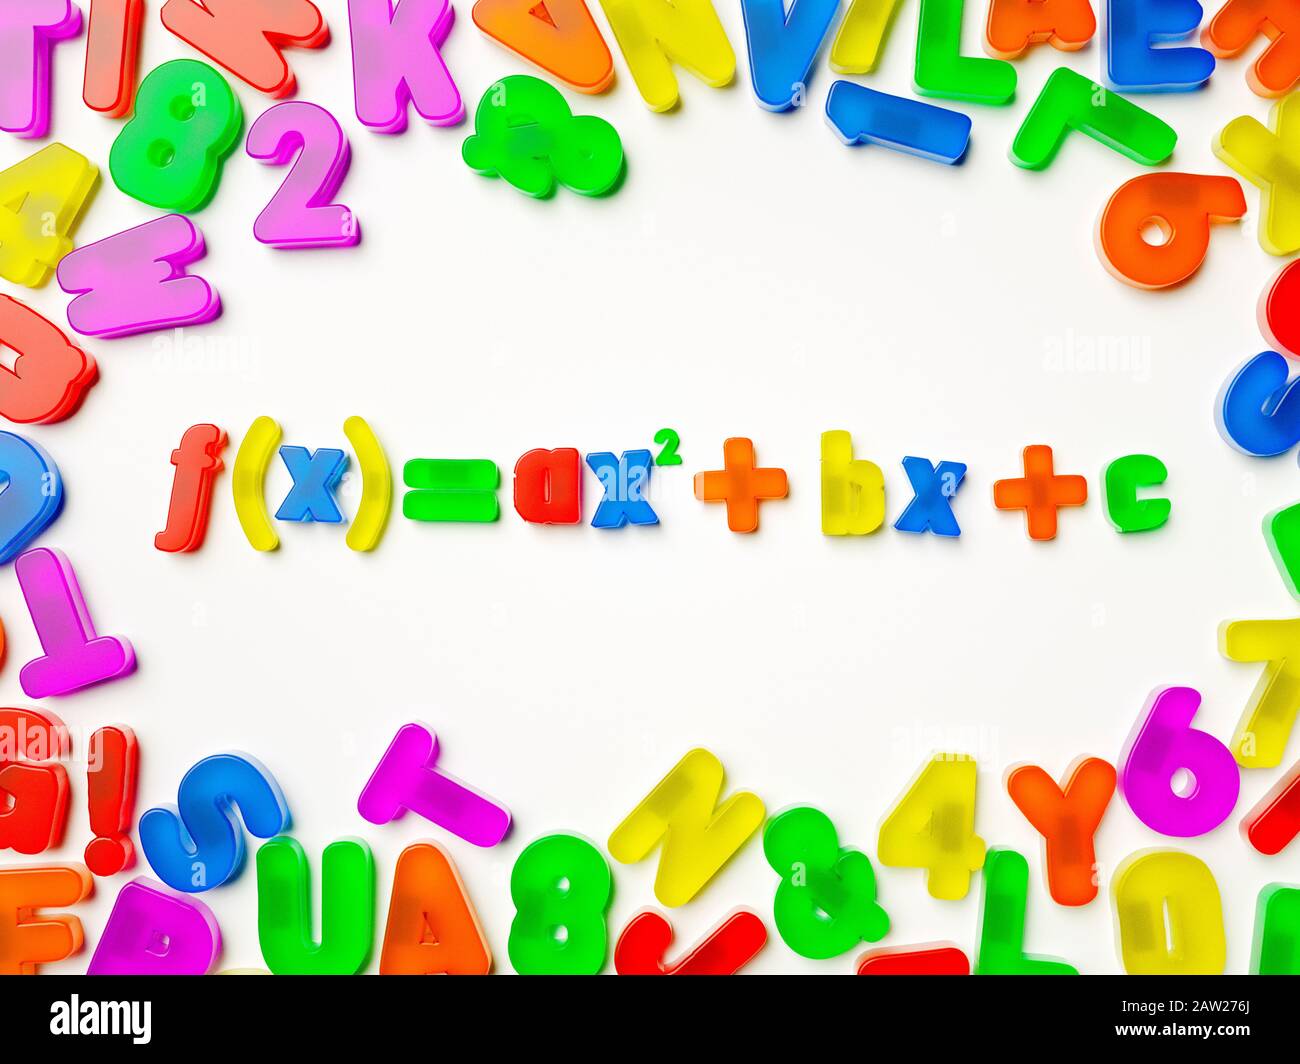 Plastique multicolore réfrigérateur aimant alphabet orthographe une formule mathématique complexe Banque D'Images